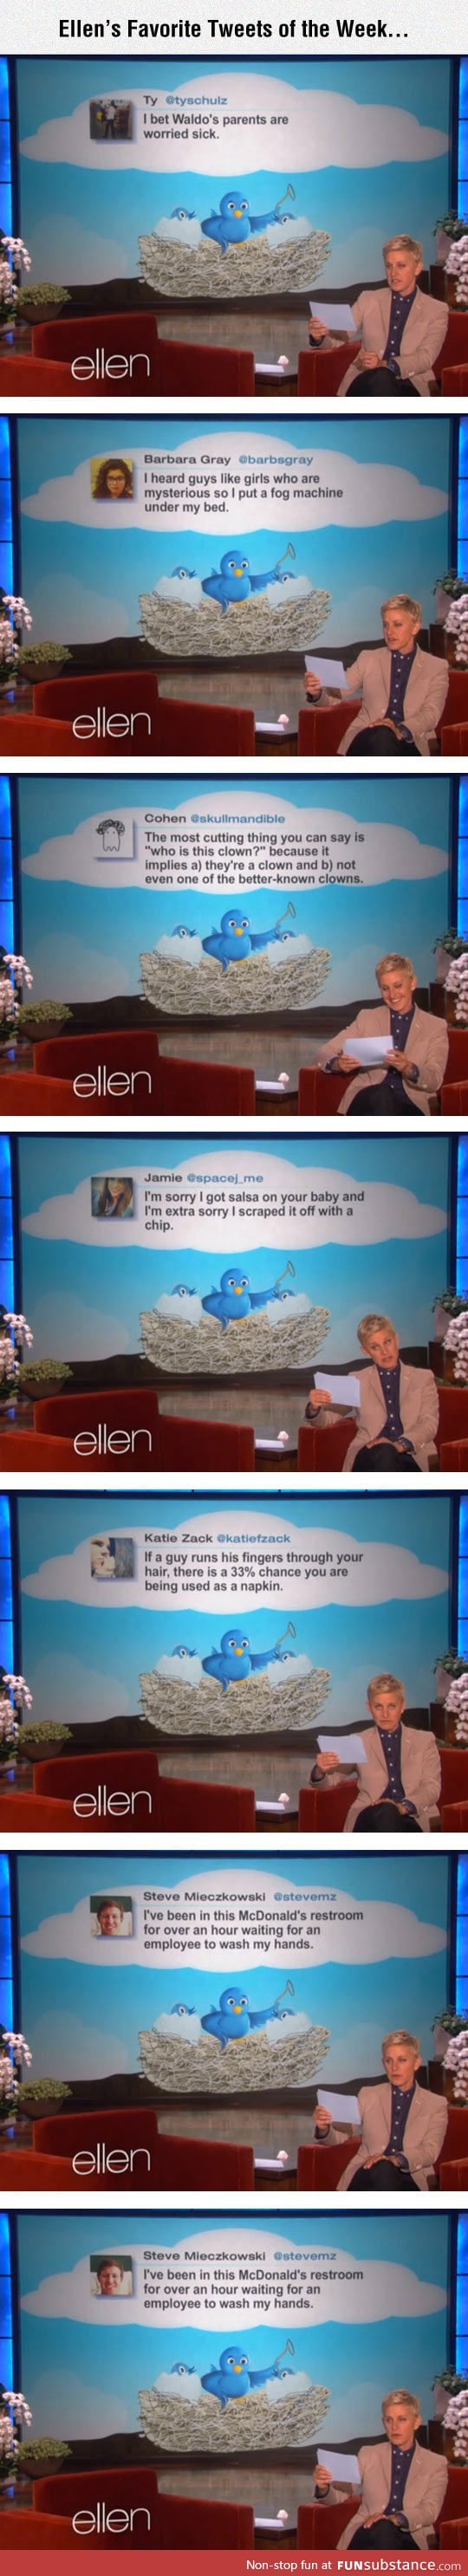 Ellen’s favorite tweets